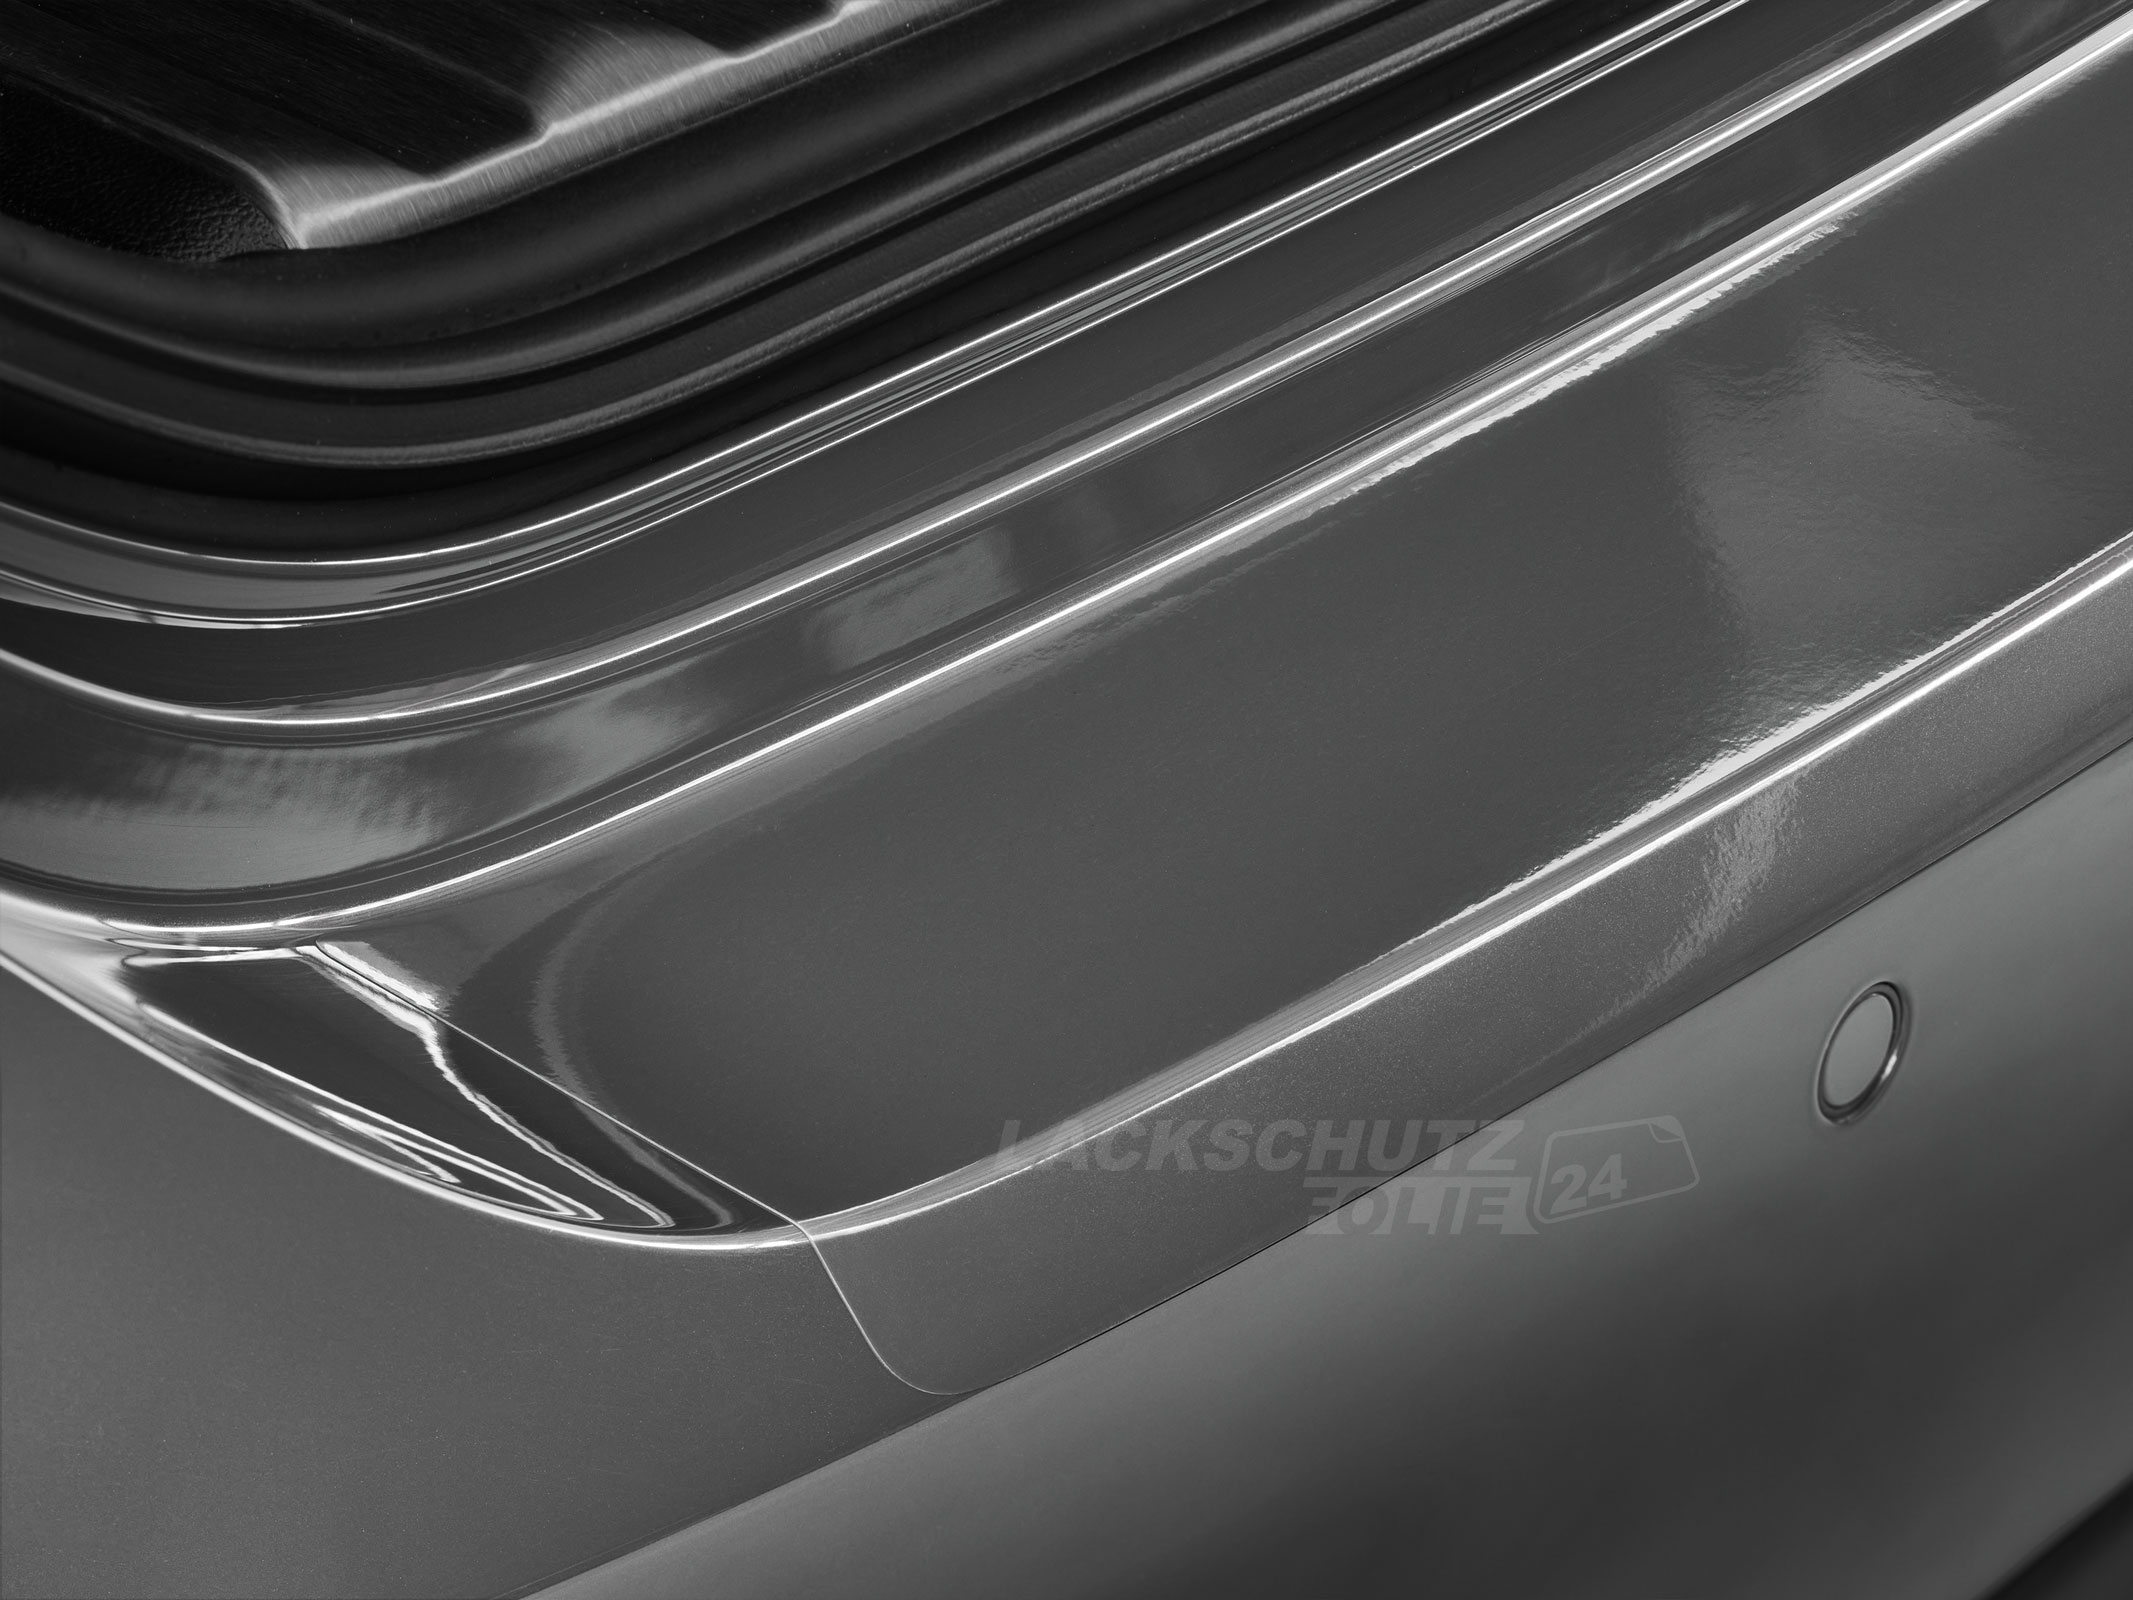 Ladekantenschutzfolie - Transparent Glatt Hochglänzend 240 µm stark für VW / Volkswagen Golf Plus ab BJ 2010, Facelift